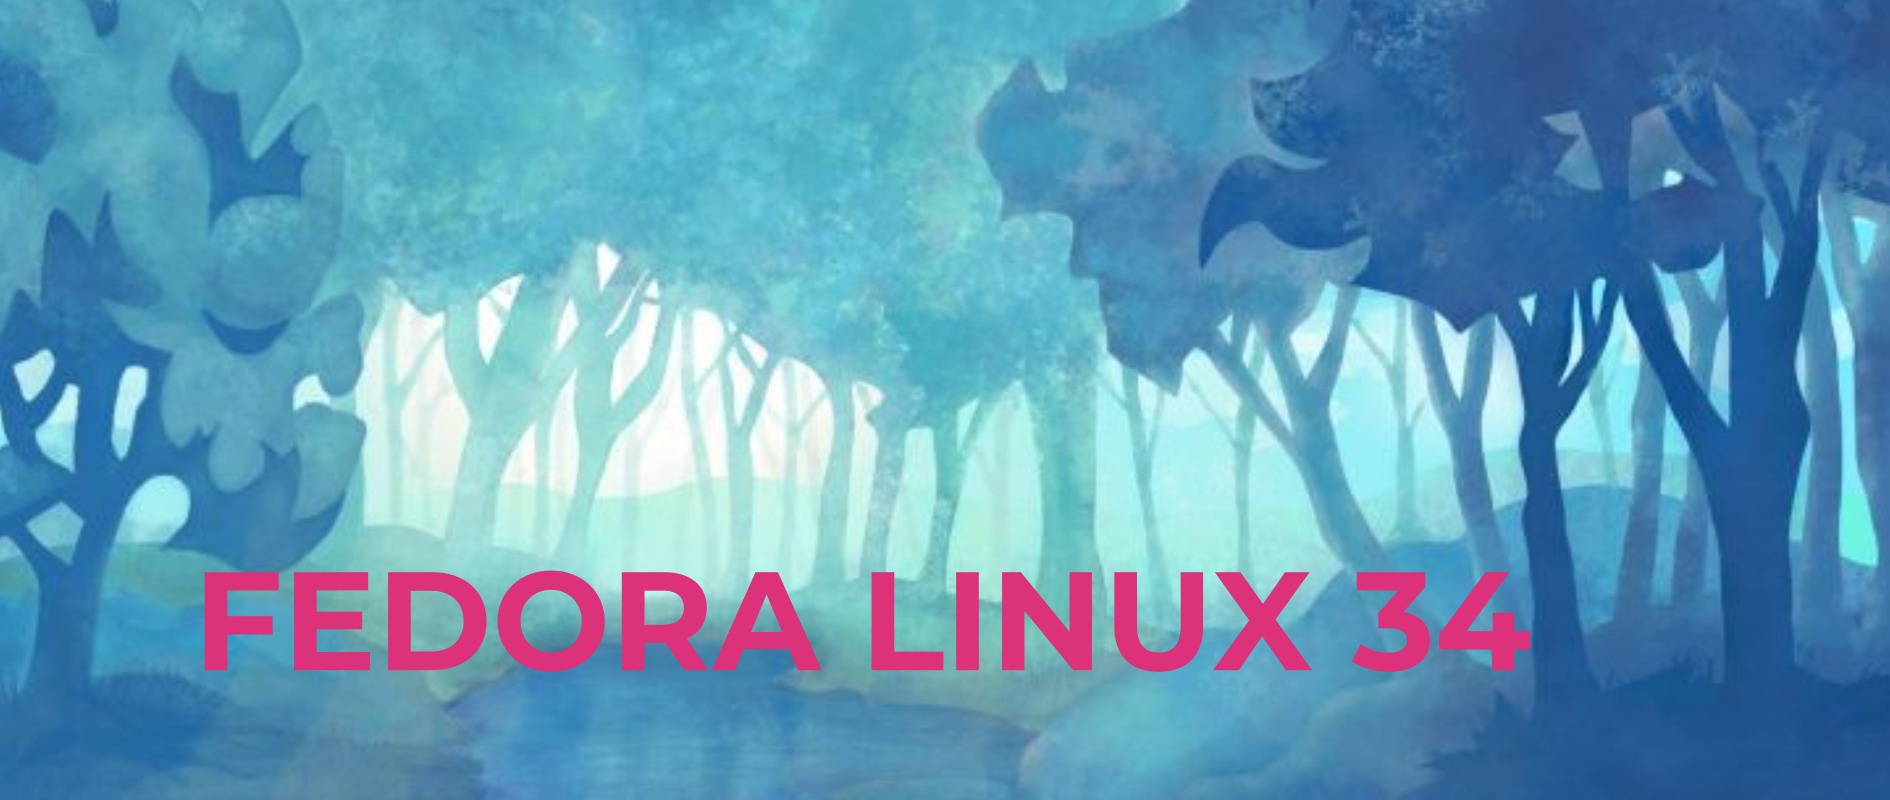 Fedora 34 released